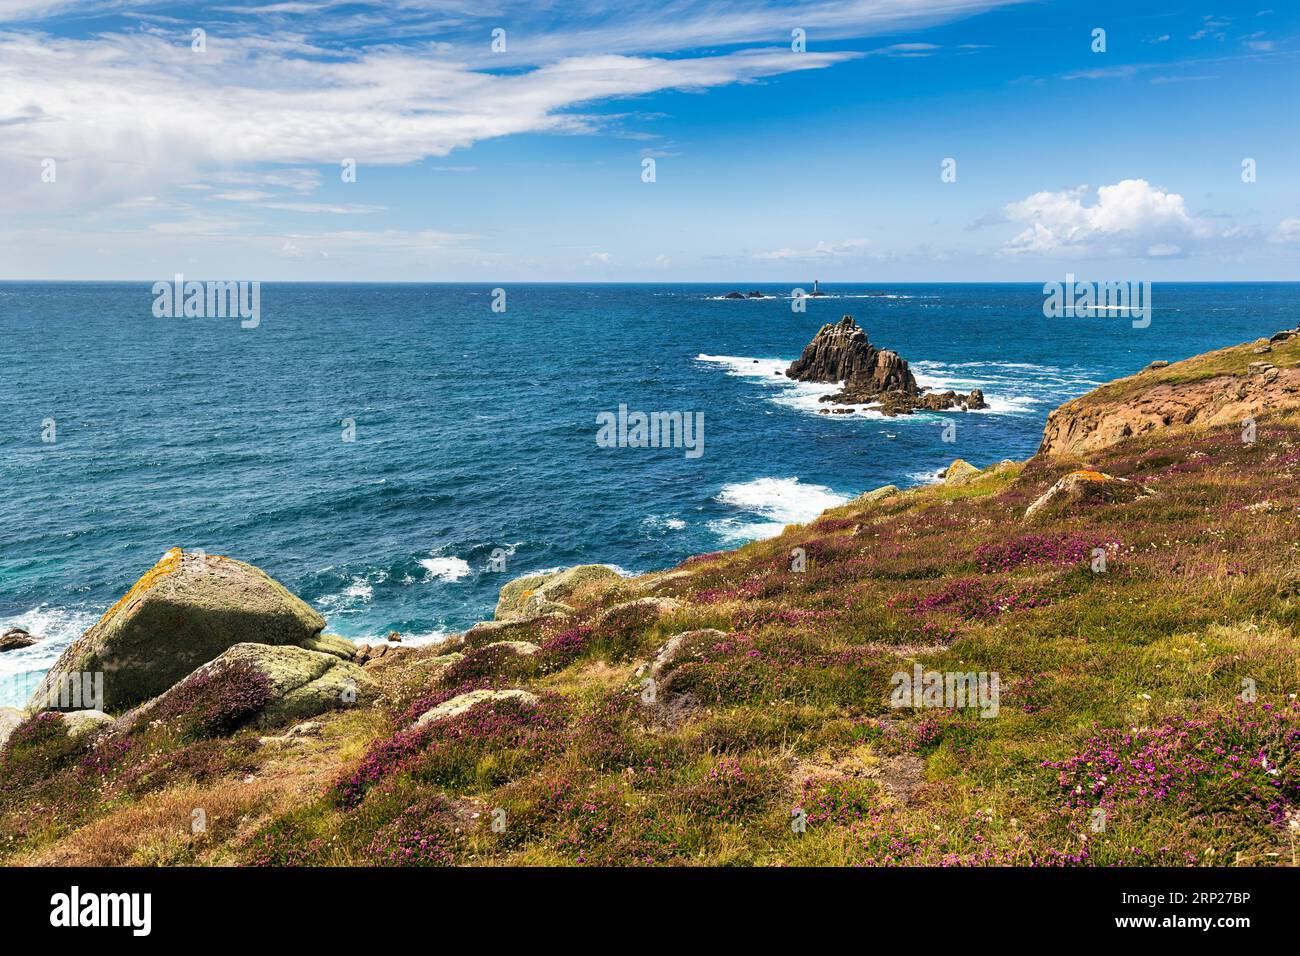 Côte, fleurs de bruyère sur la côte atlantique, vue sur le chemin de la côte sud-ouest, ciel bleu en été, Headland LANd's End, Lands End, Penzance Banque D'Images